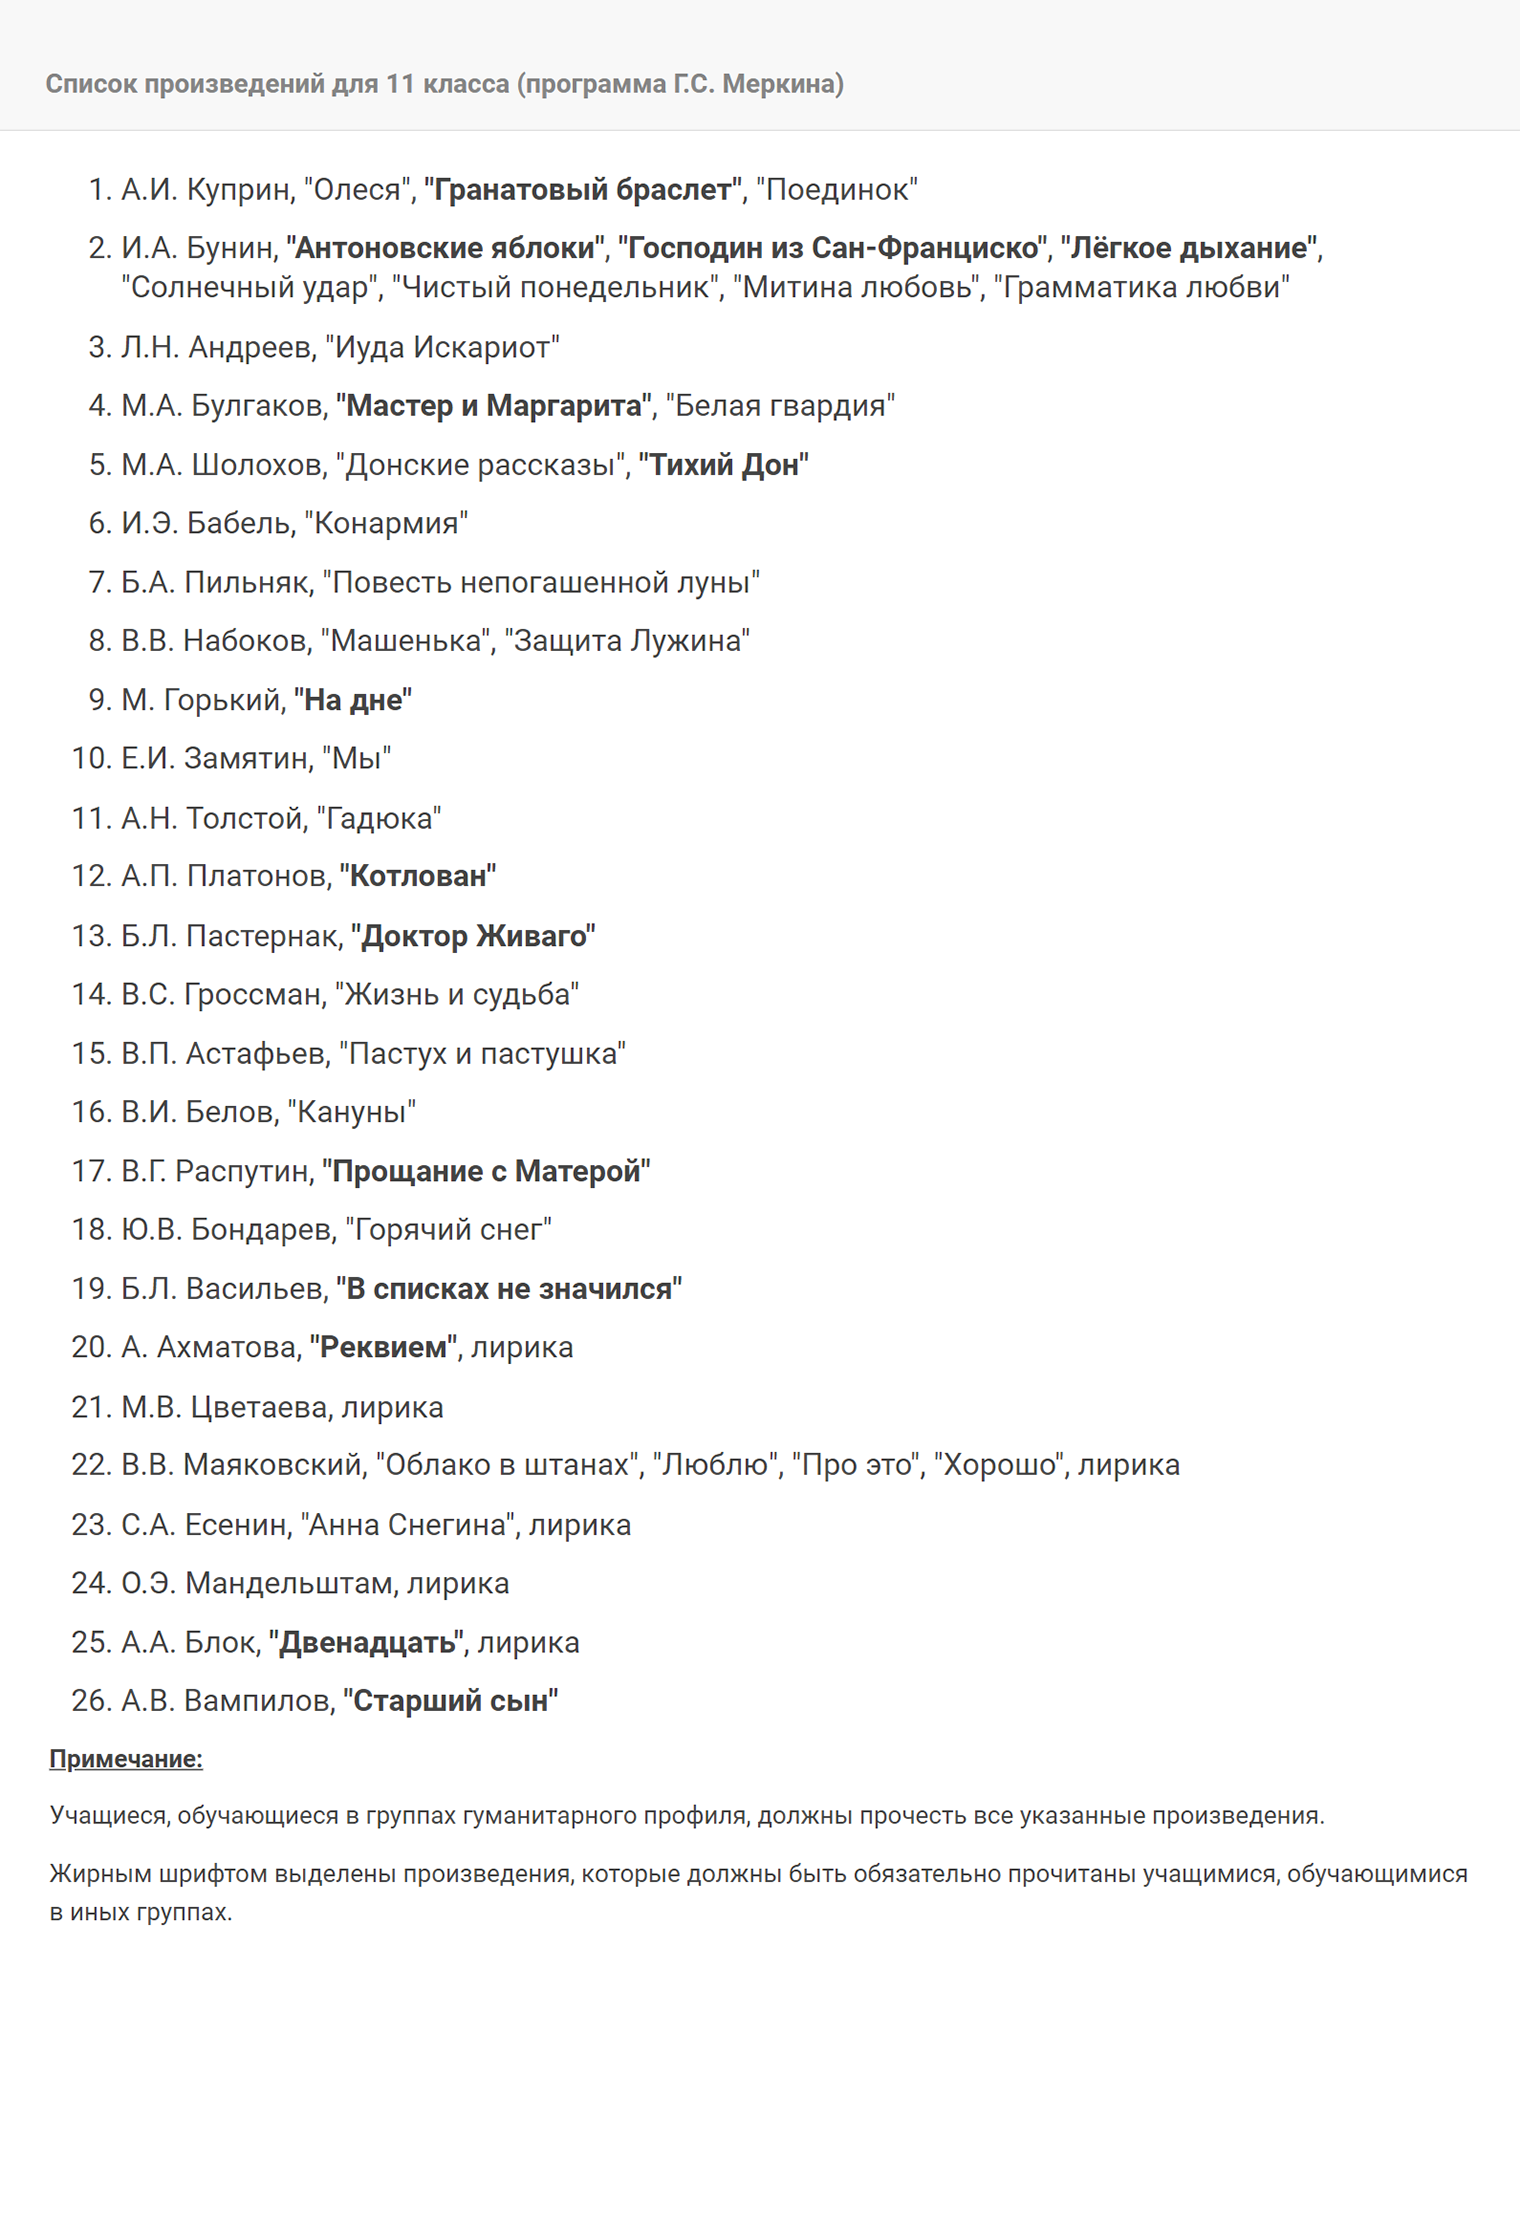 Список чтения на лето от Измайловской школы № 1508. Обратите внимание, что многие авторы совпадают с авторами из предыдущего списка, но произведения отличаются. Источник: gym1508.mskobr.ru